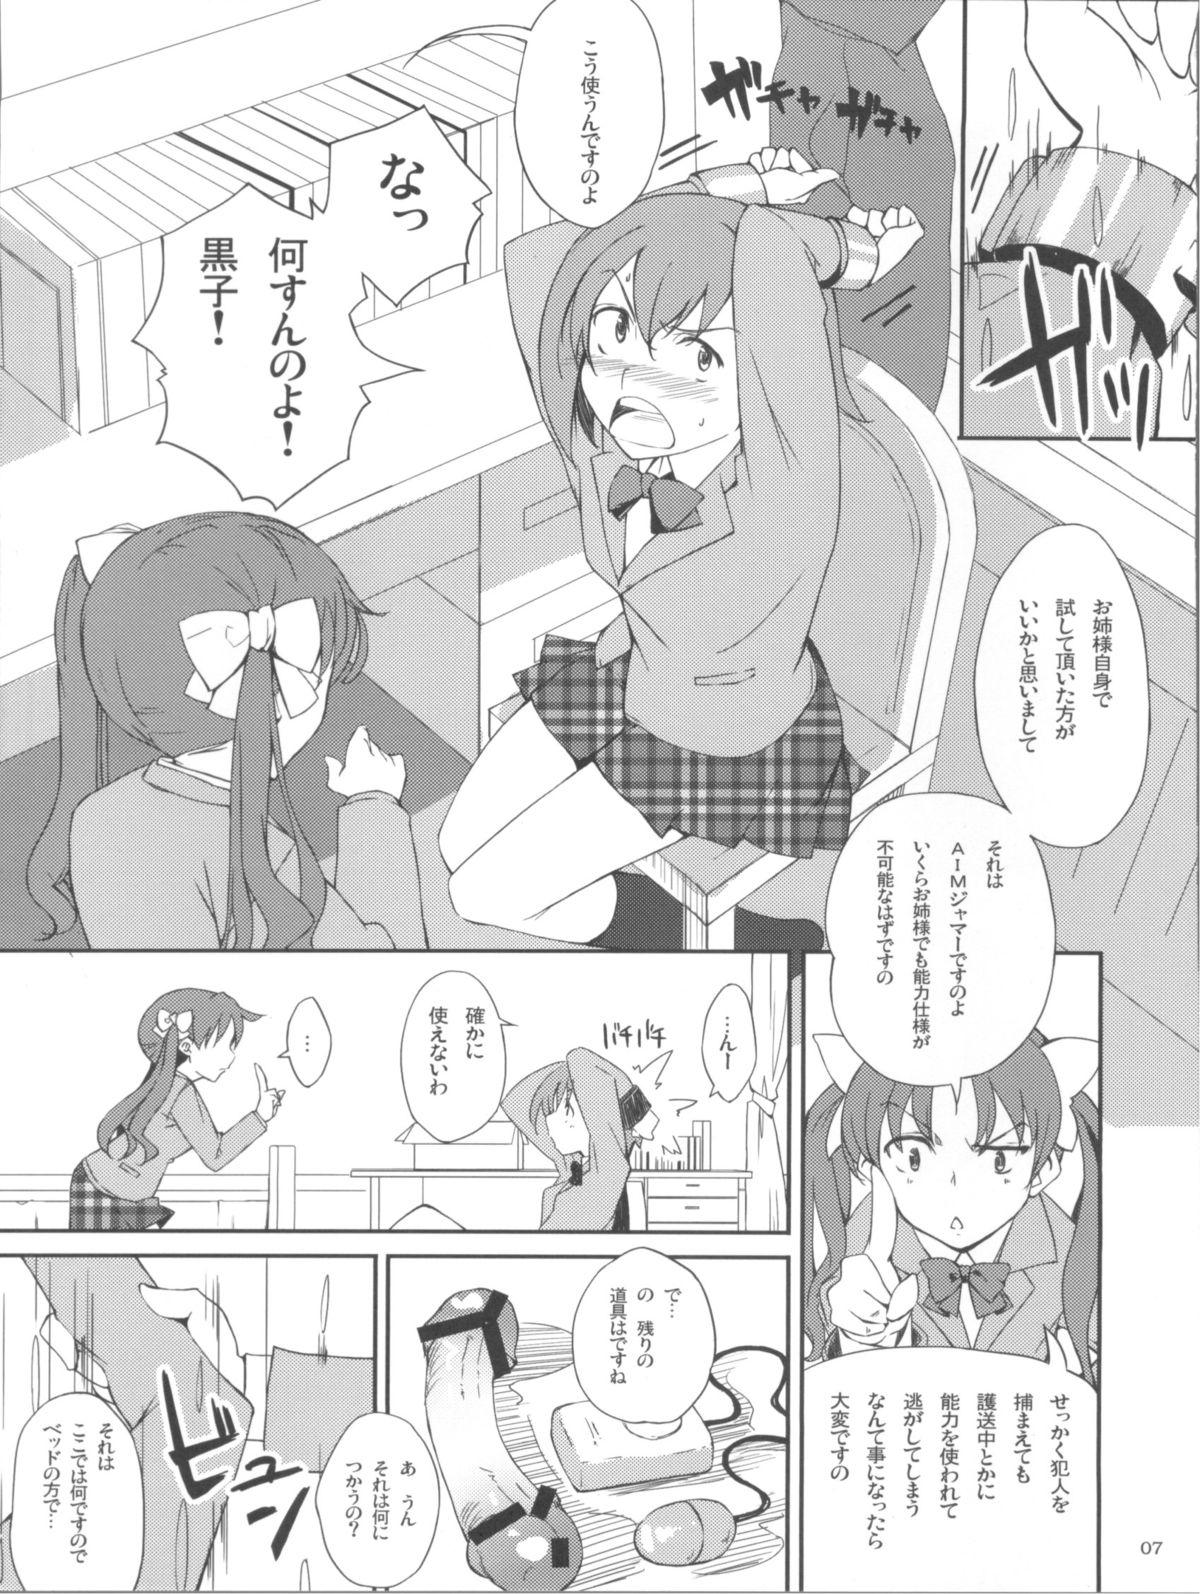 Analfuck Desu no!! - Toaru kagaku no railgun Toaru majutsu no index Flash - Page 7